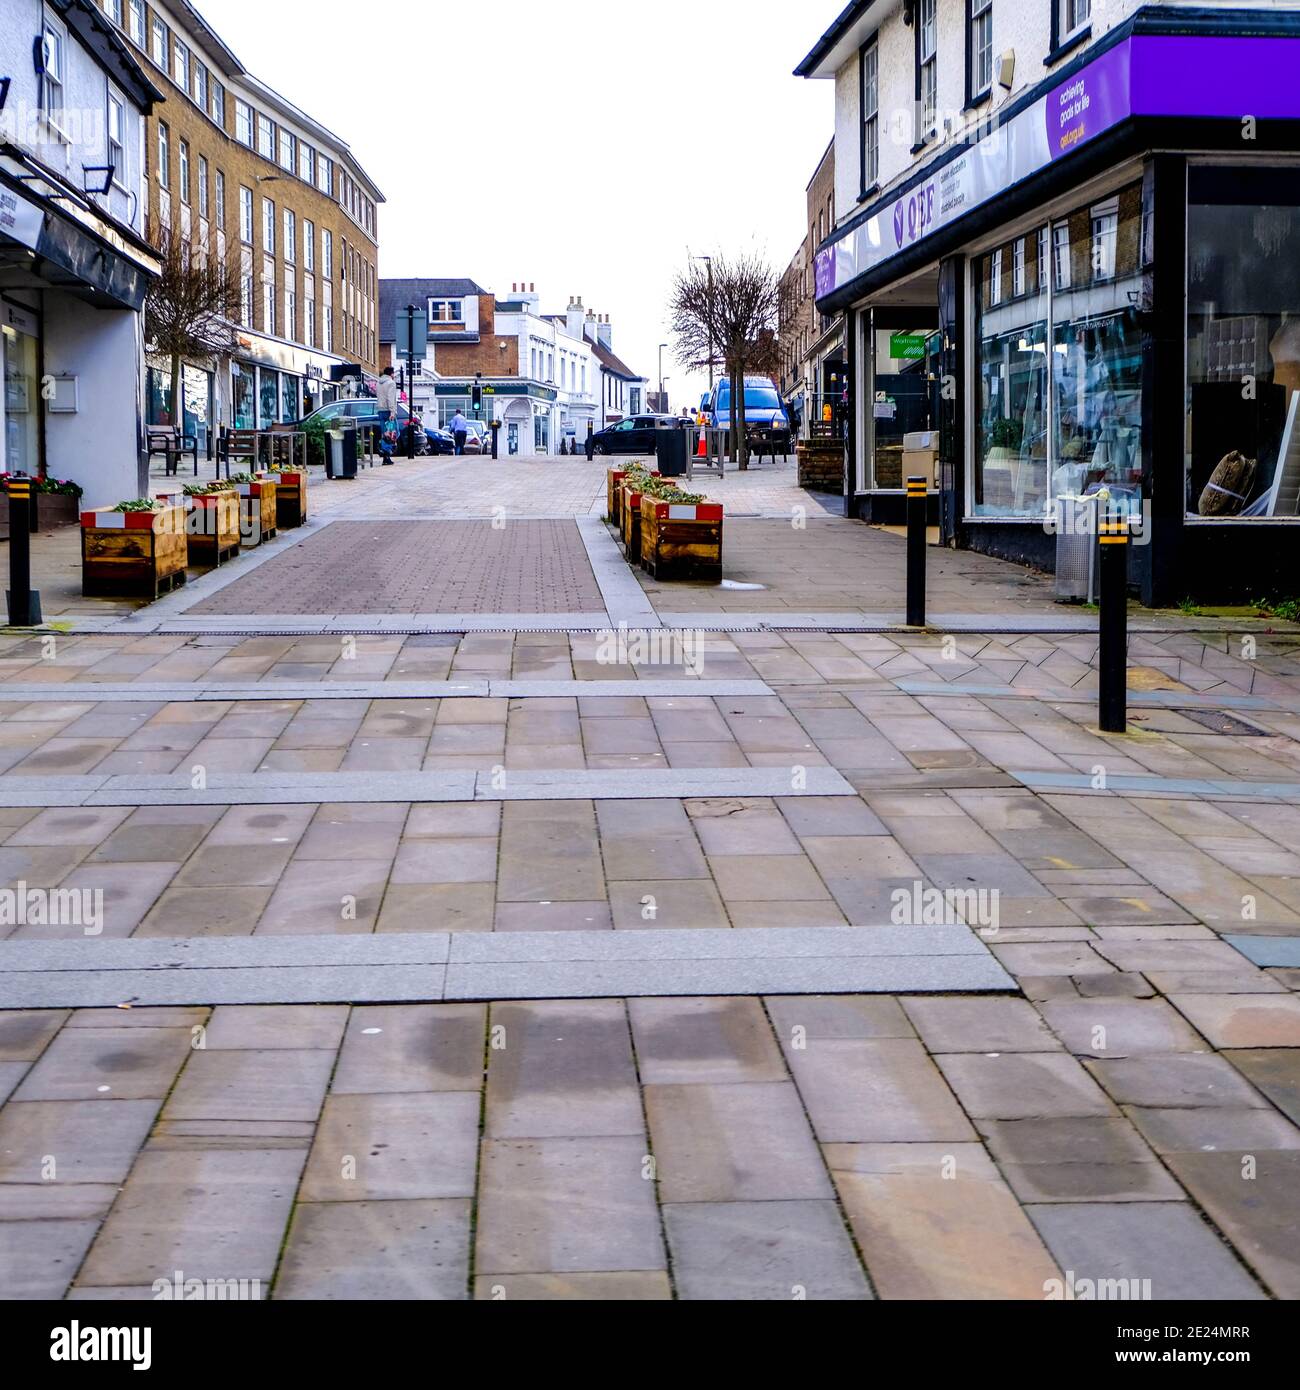 Londres Reino Unido, 07 2021 de enero, calles desiertas y tiendas vacías durante el cierre pandémico Covid-19 Foto de stock